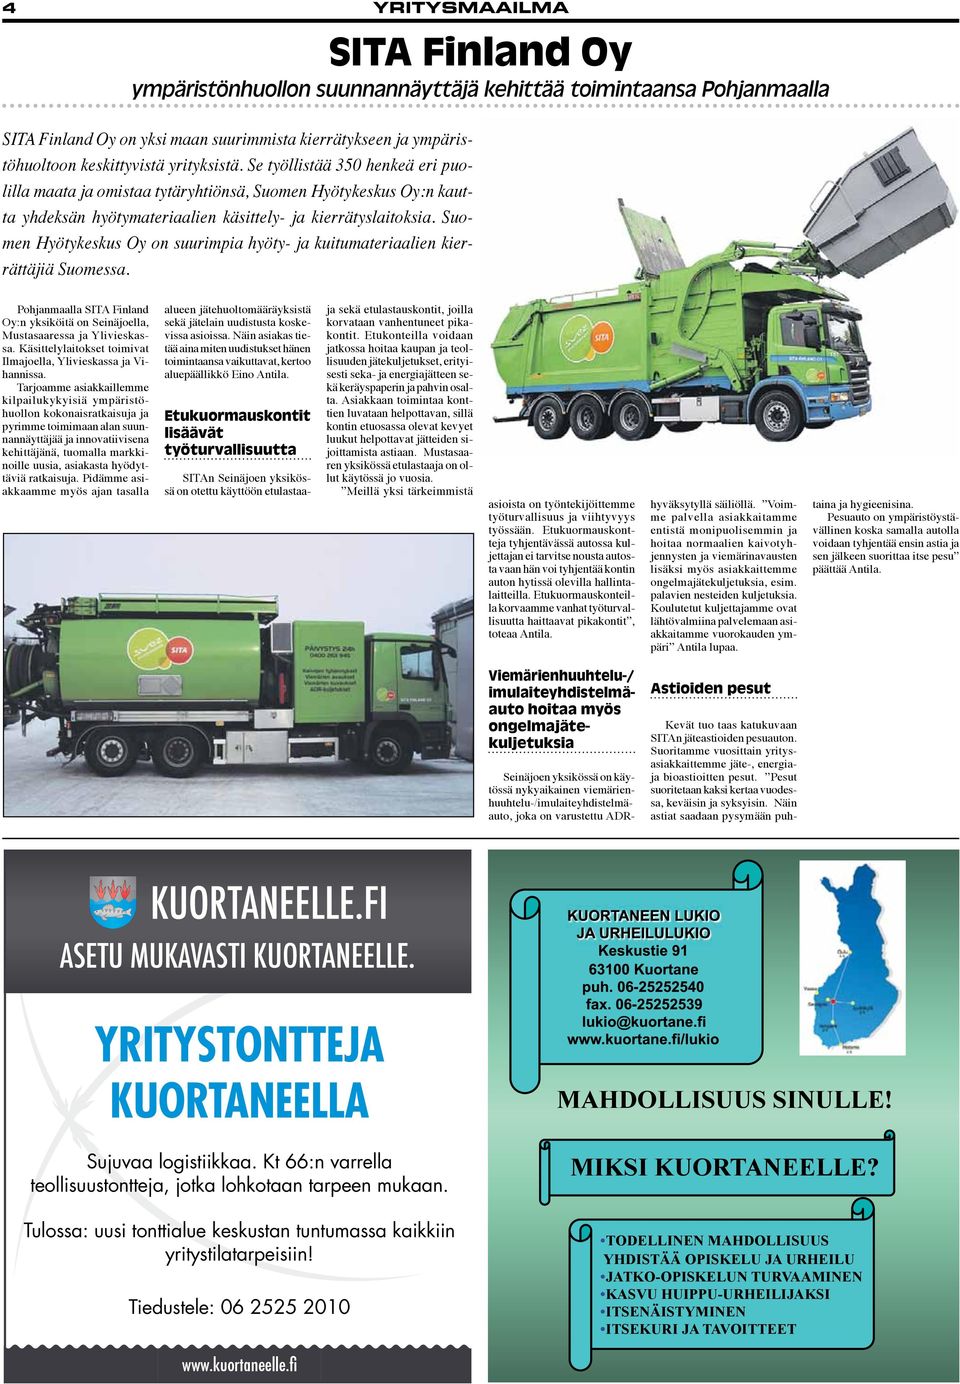 Suomen Hyötykeskus Oy on suurimpia hyöty- ja kuitumateriaalien kierrättäjiä Suomessa. Pohjanmaalla SITA Finland Oy:n yksiköitä on Seinäjoella, Mustasaaressa ja Ylivieskassa.